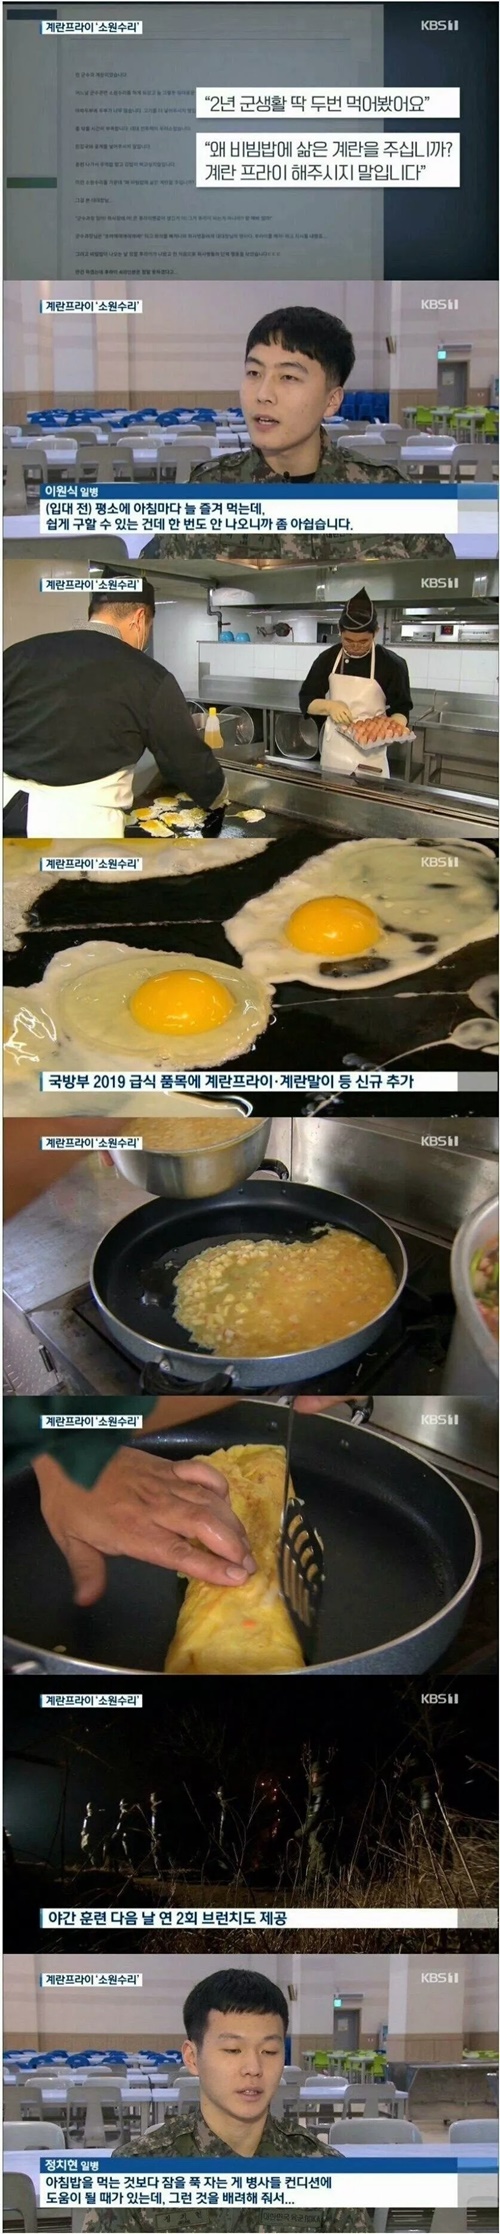 왜 비빔밥에 삶은 계란을 주십니까